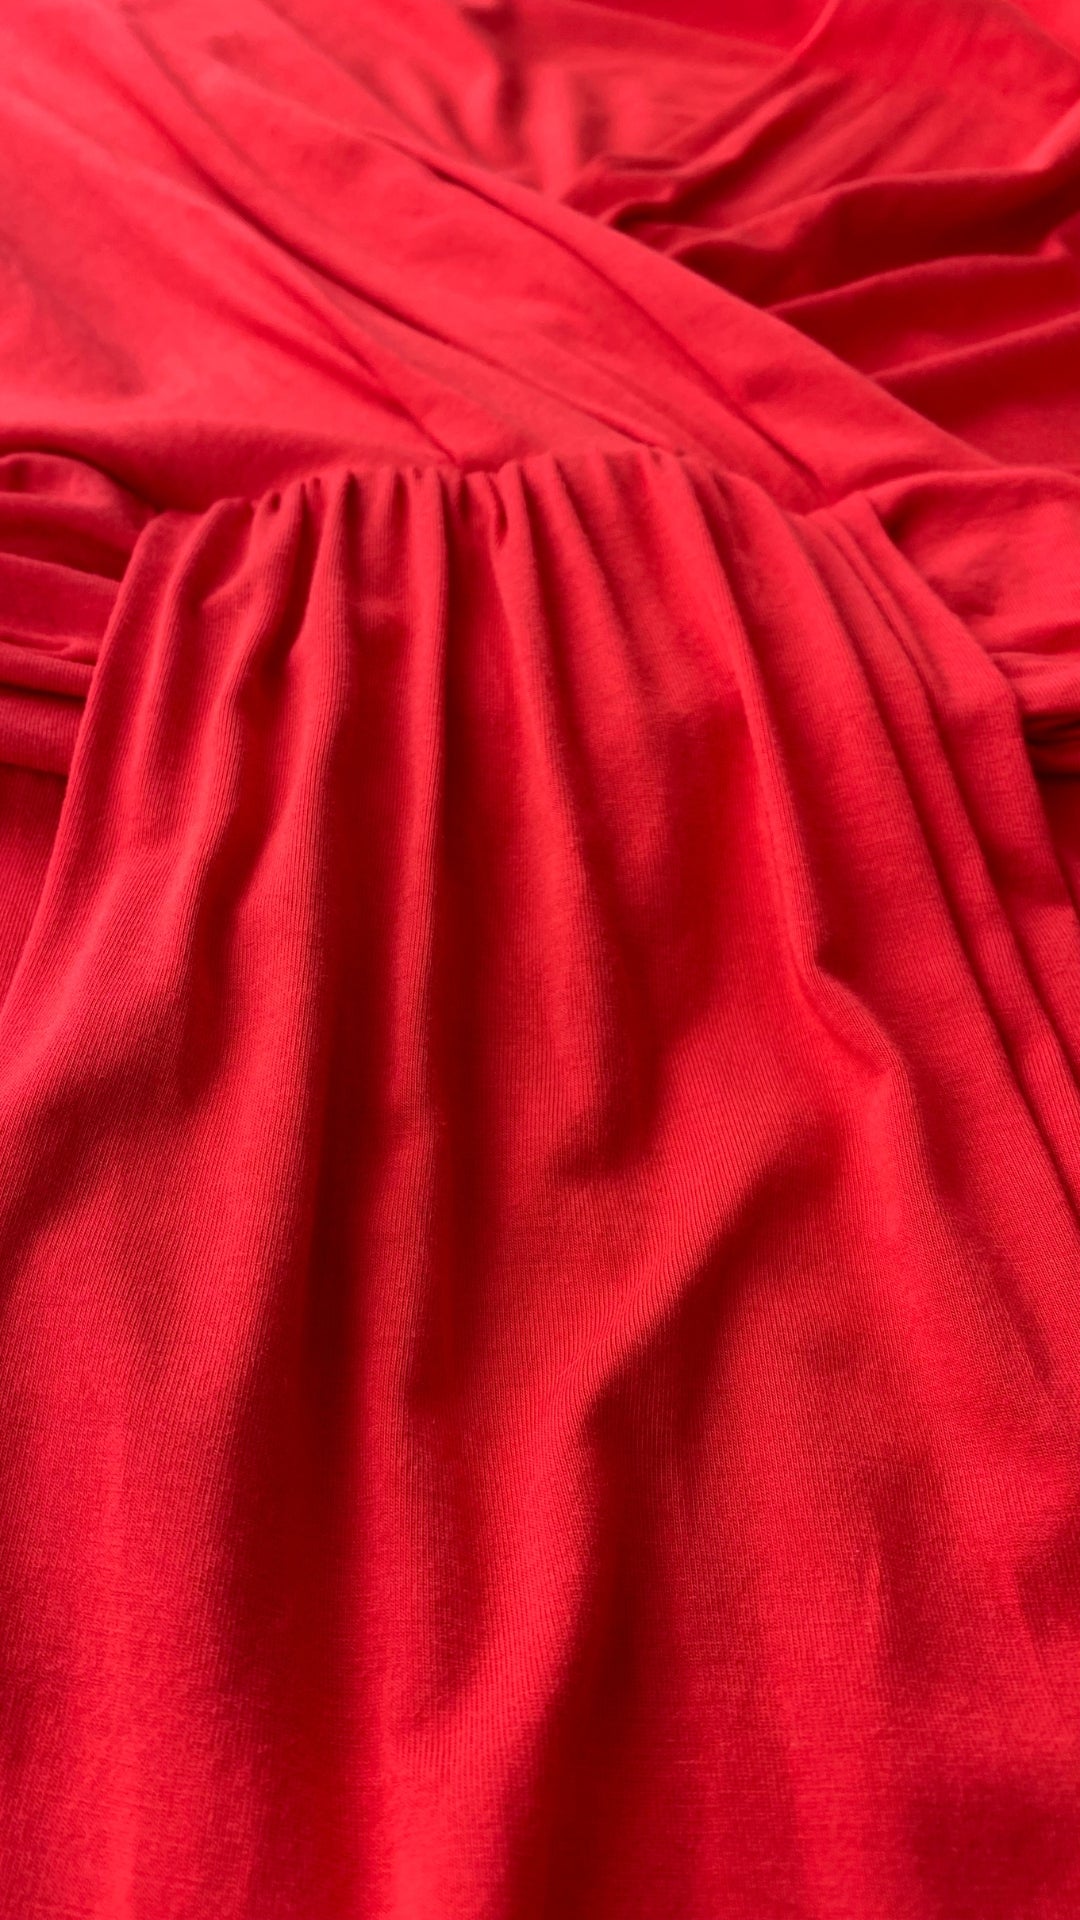 Robe rouge extensible cache-coeur drapé Tristan, taille medium. Vue de près du tissu.